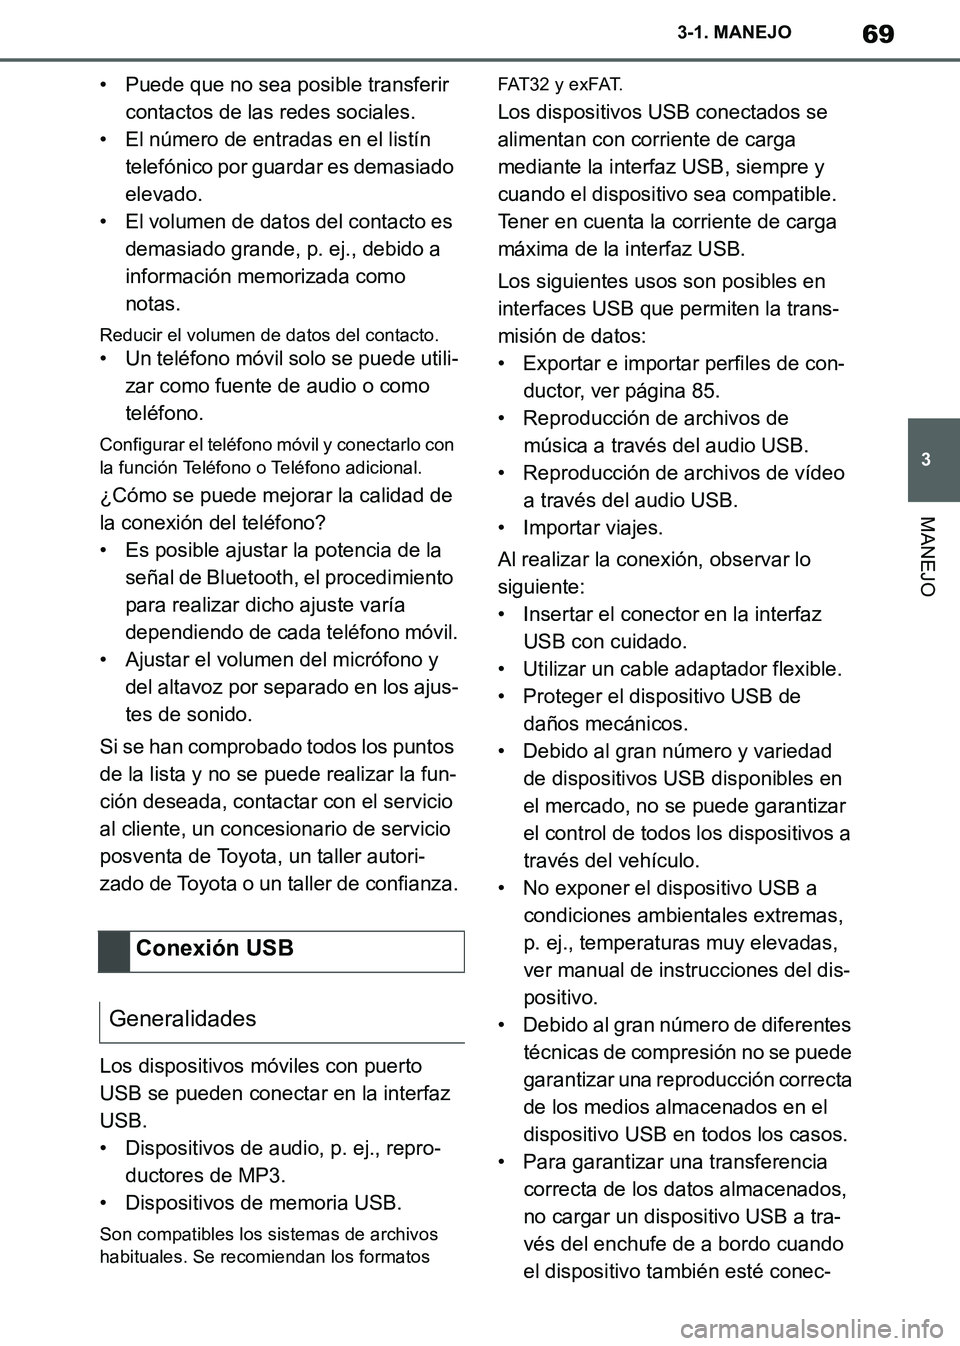 TOYOTA SUPRA 2019  Manuale de Empleo (in Spanish) 69
3
Supra Owners Manual_ES
3-1. MANEJO
MANEJO
• Puede que no sea posible transferir 
contactos de las redes sociales.
• El número de entradas en el listín 
telefónico por guardar es demasiado